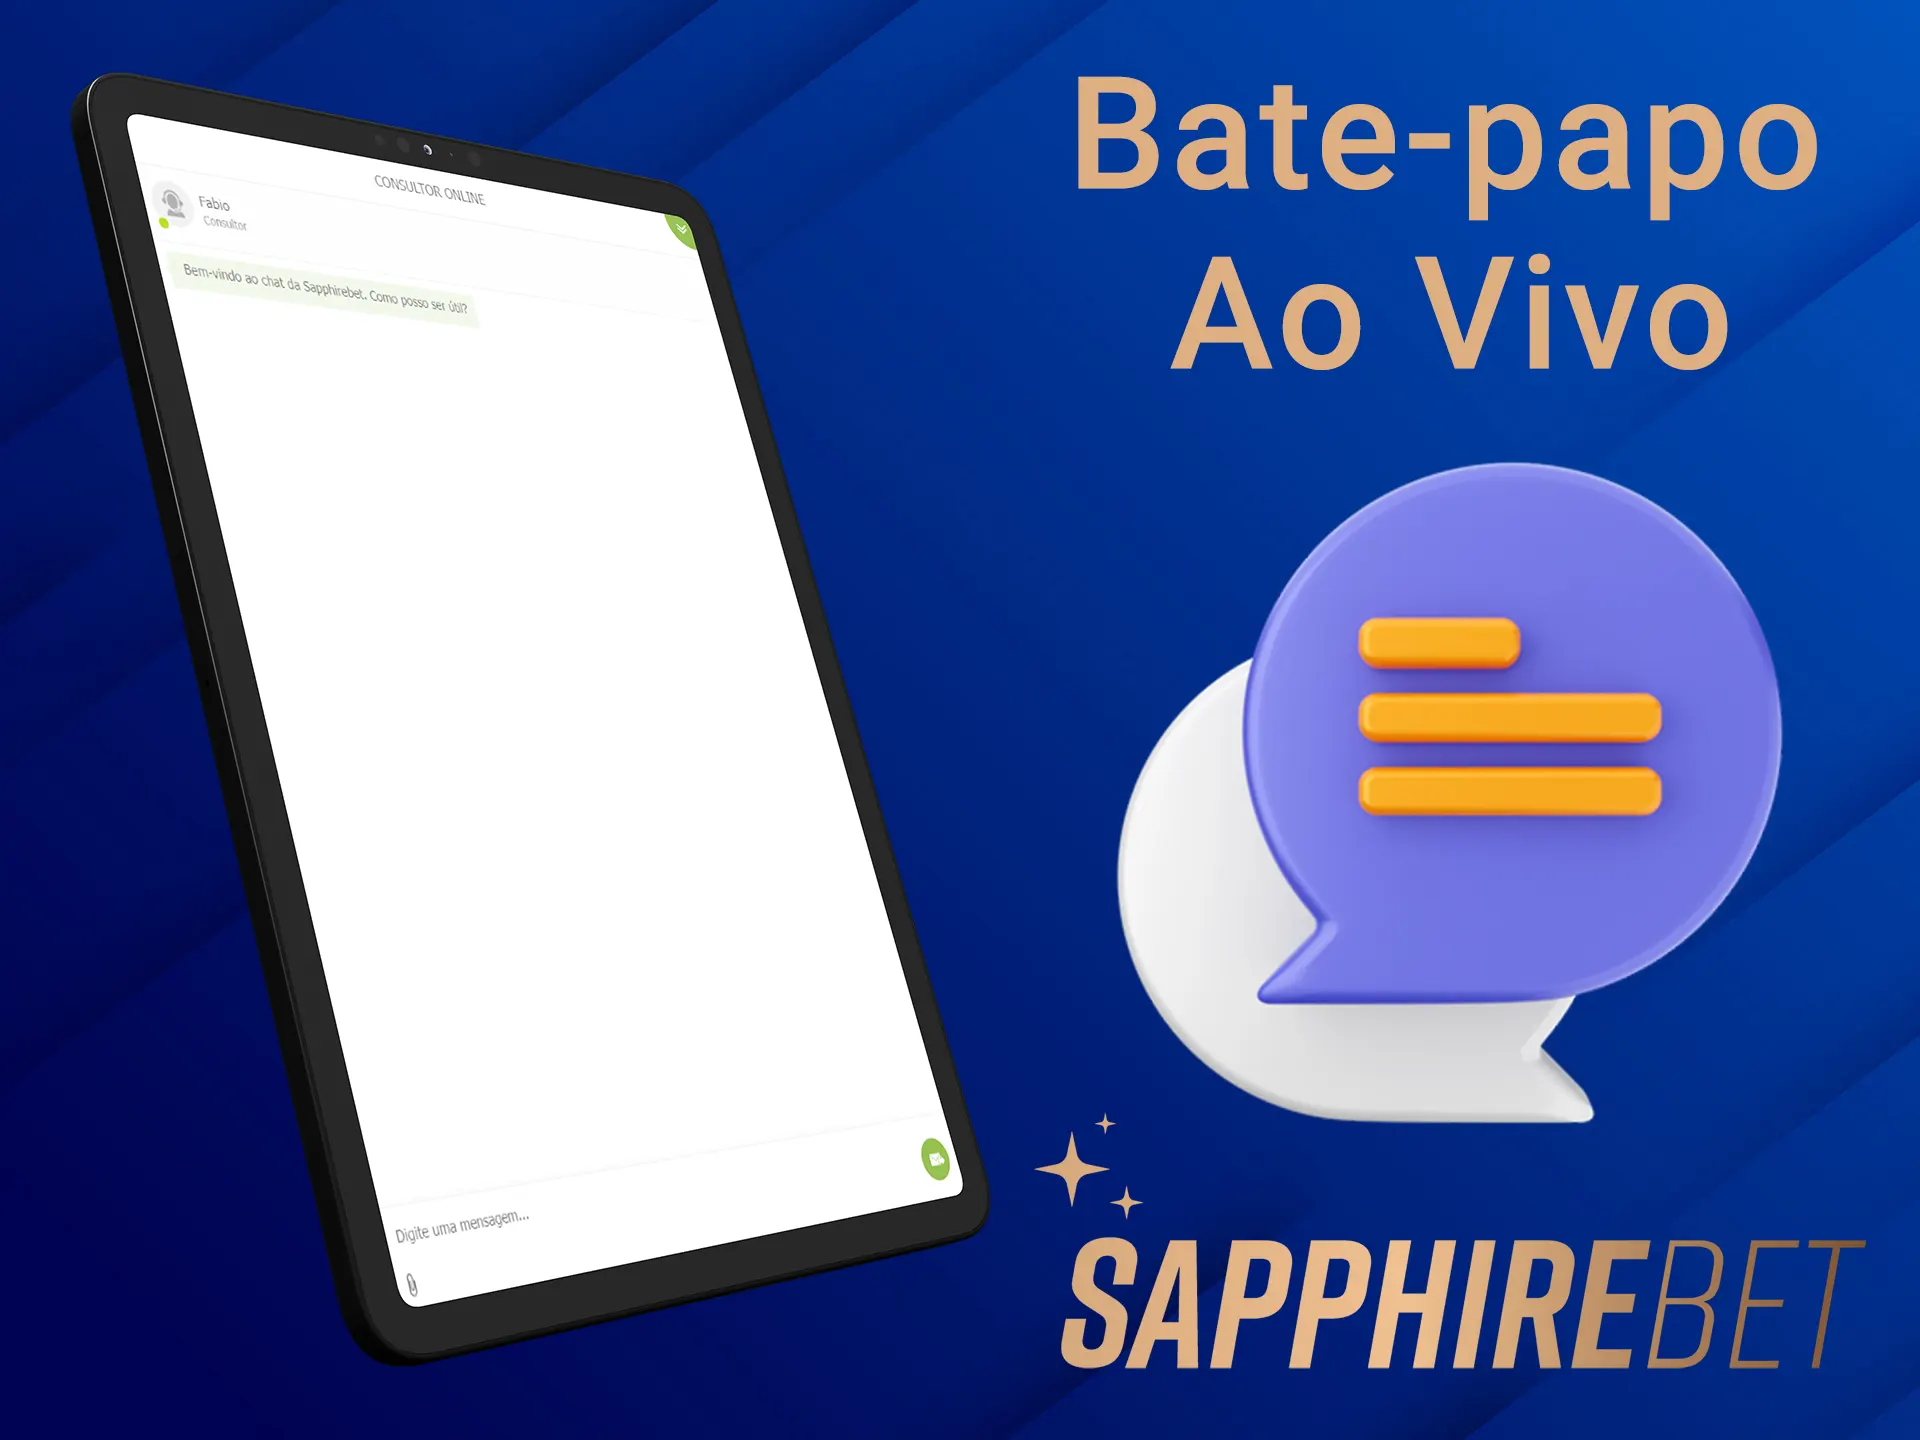 Envie sua pergunta para o aplicativo Sapphirebet no bate-papo on-line.